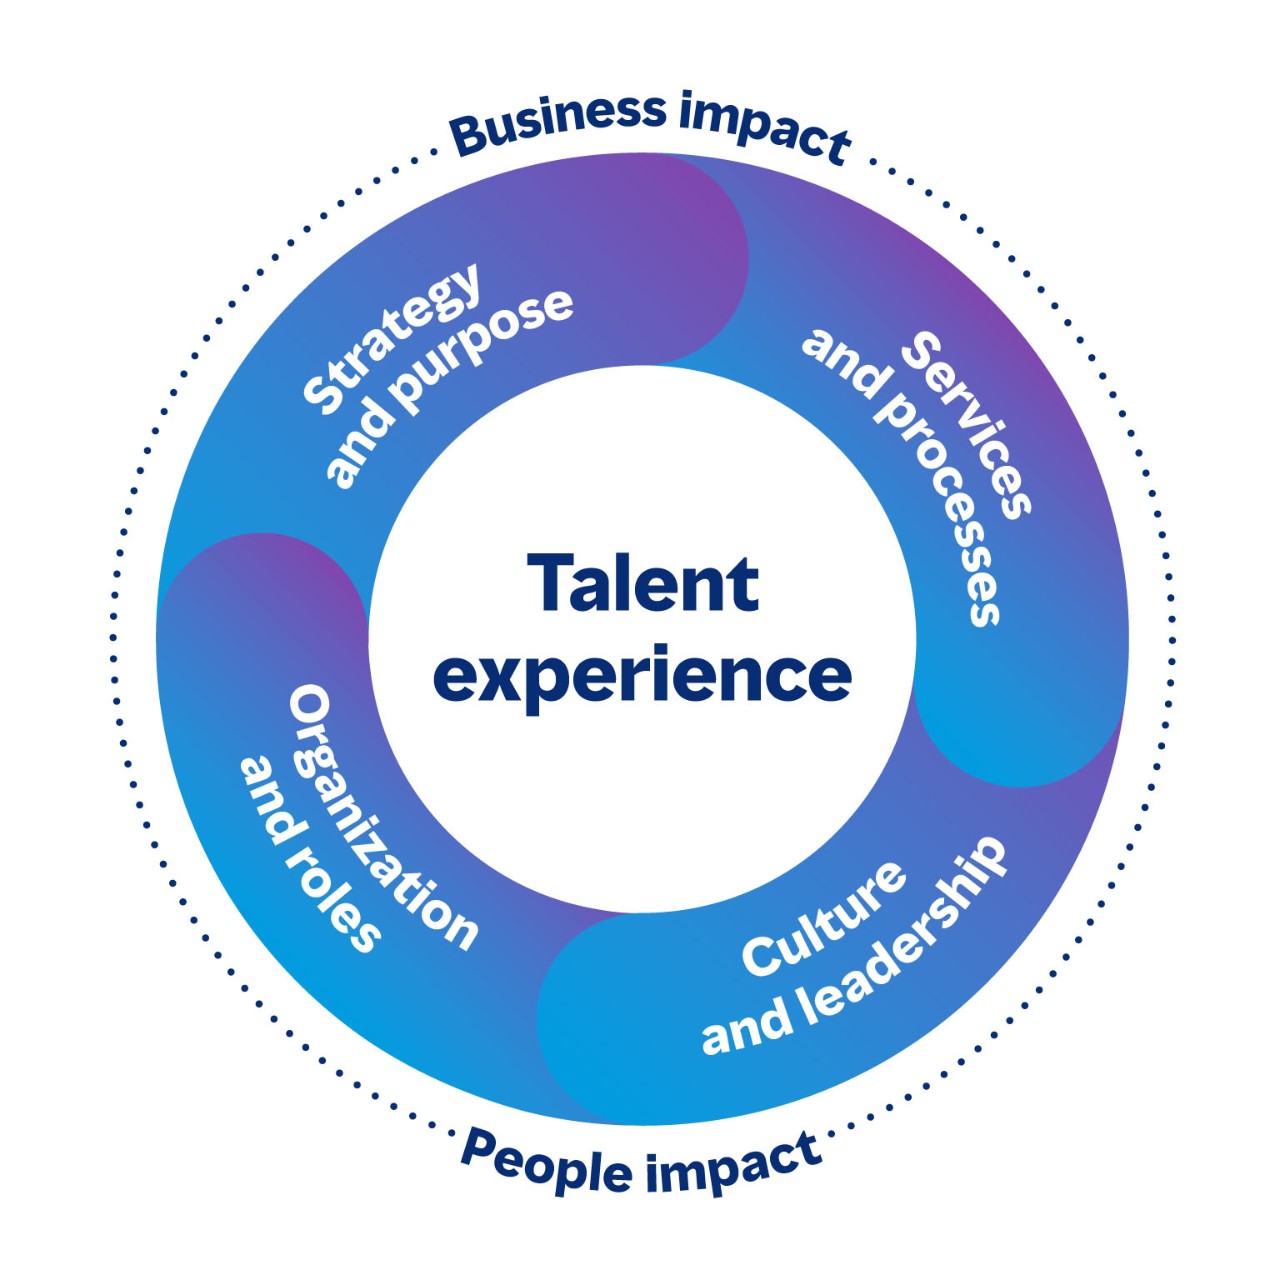 Schéma montrant les domaines connectés de l’expérience des talents qui ont un impact à la fois sur l’entreprise et sur les salariés. Les quatre domaines sont la stratégie et l’objectif, les services et les processus, la culture et le leadership, ainsi que l’organisation et les fonctions.